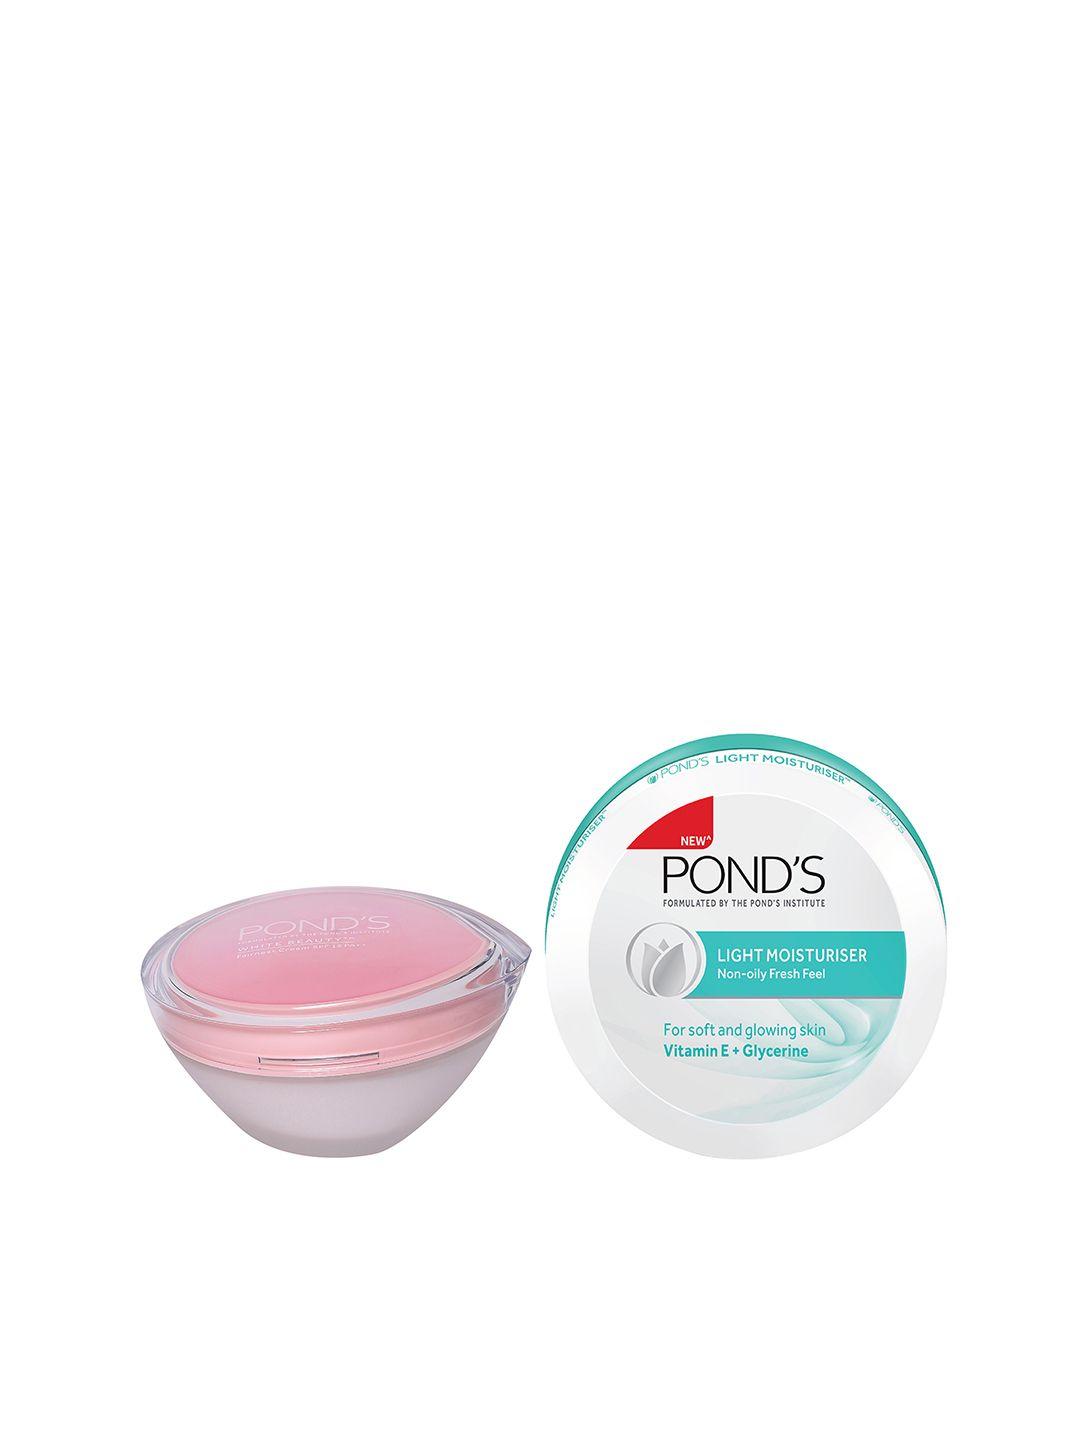 ponds-set-of-white-beauty-spf-15-cream-&-non-oily-fresh-feel-light-moisturiser